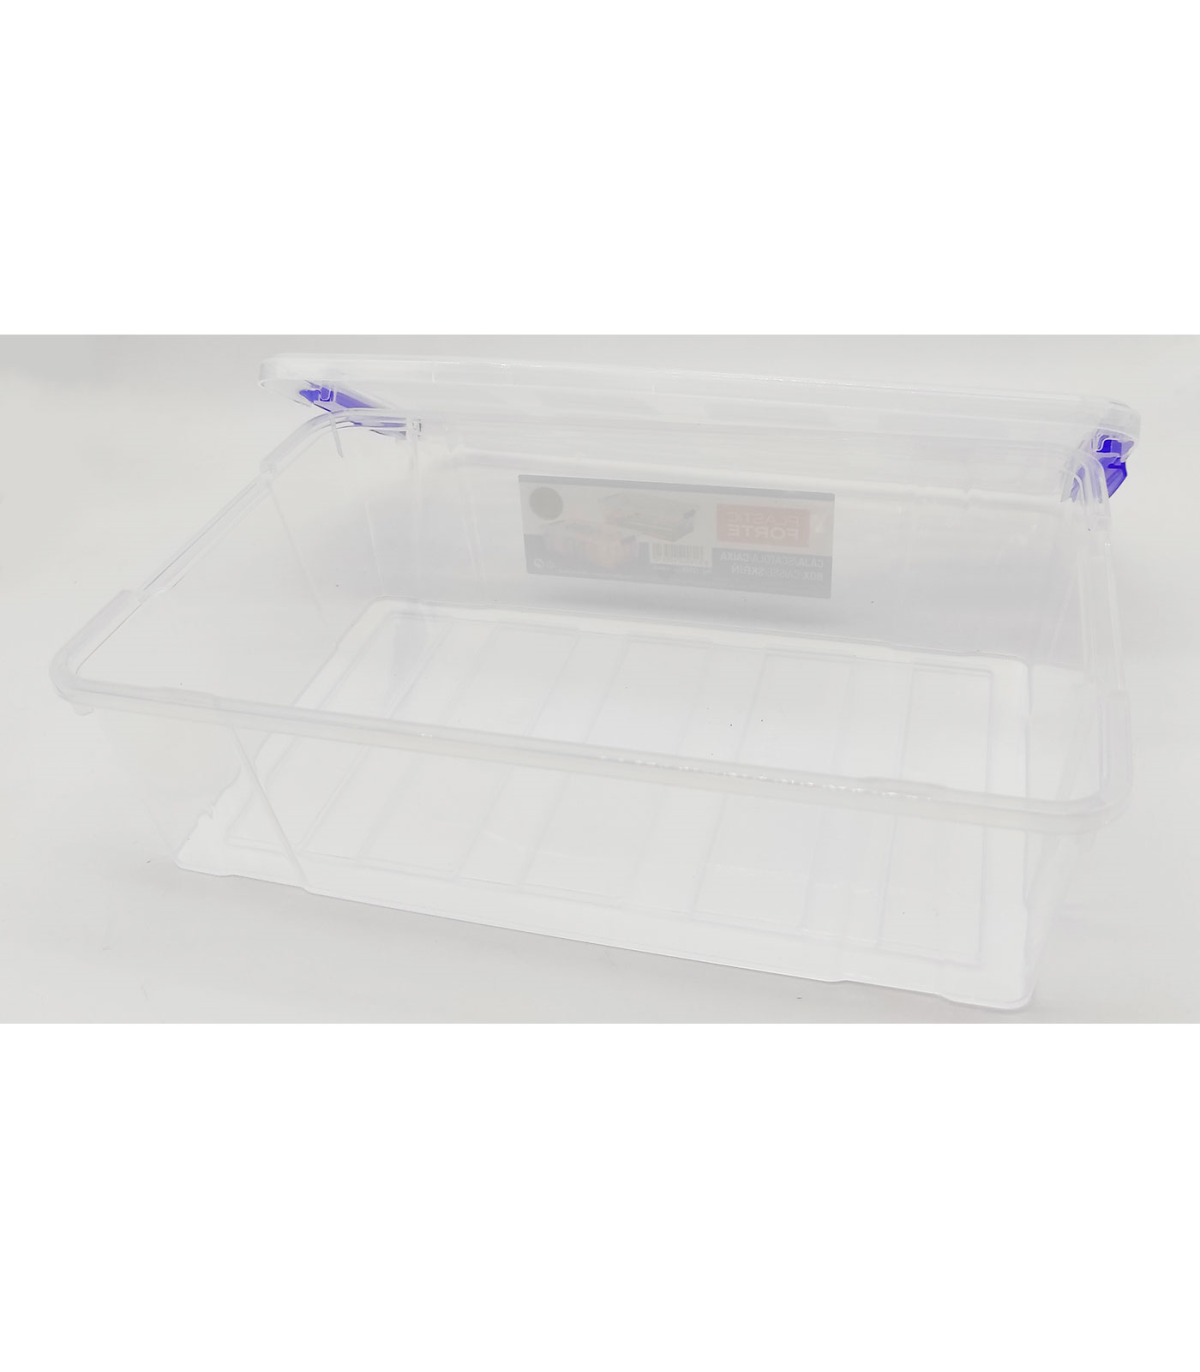 Tradineur - Caja de almacenaje de plástico transparente 2 litros, minicaja  de ordenación apilable con tapa 7,5 x 25,5 x 16,8 cm